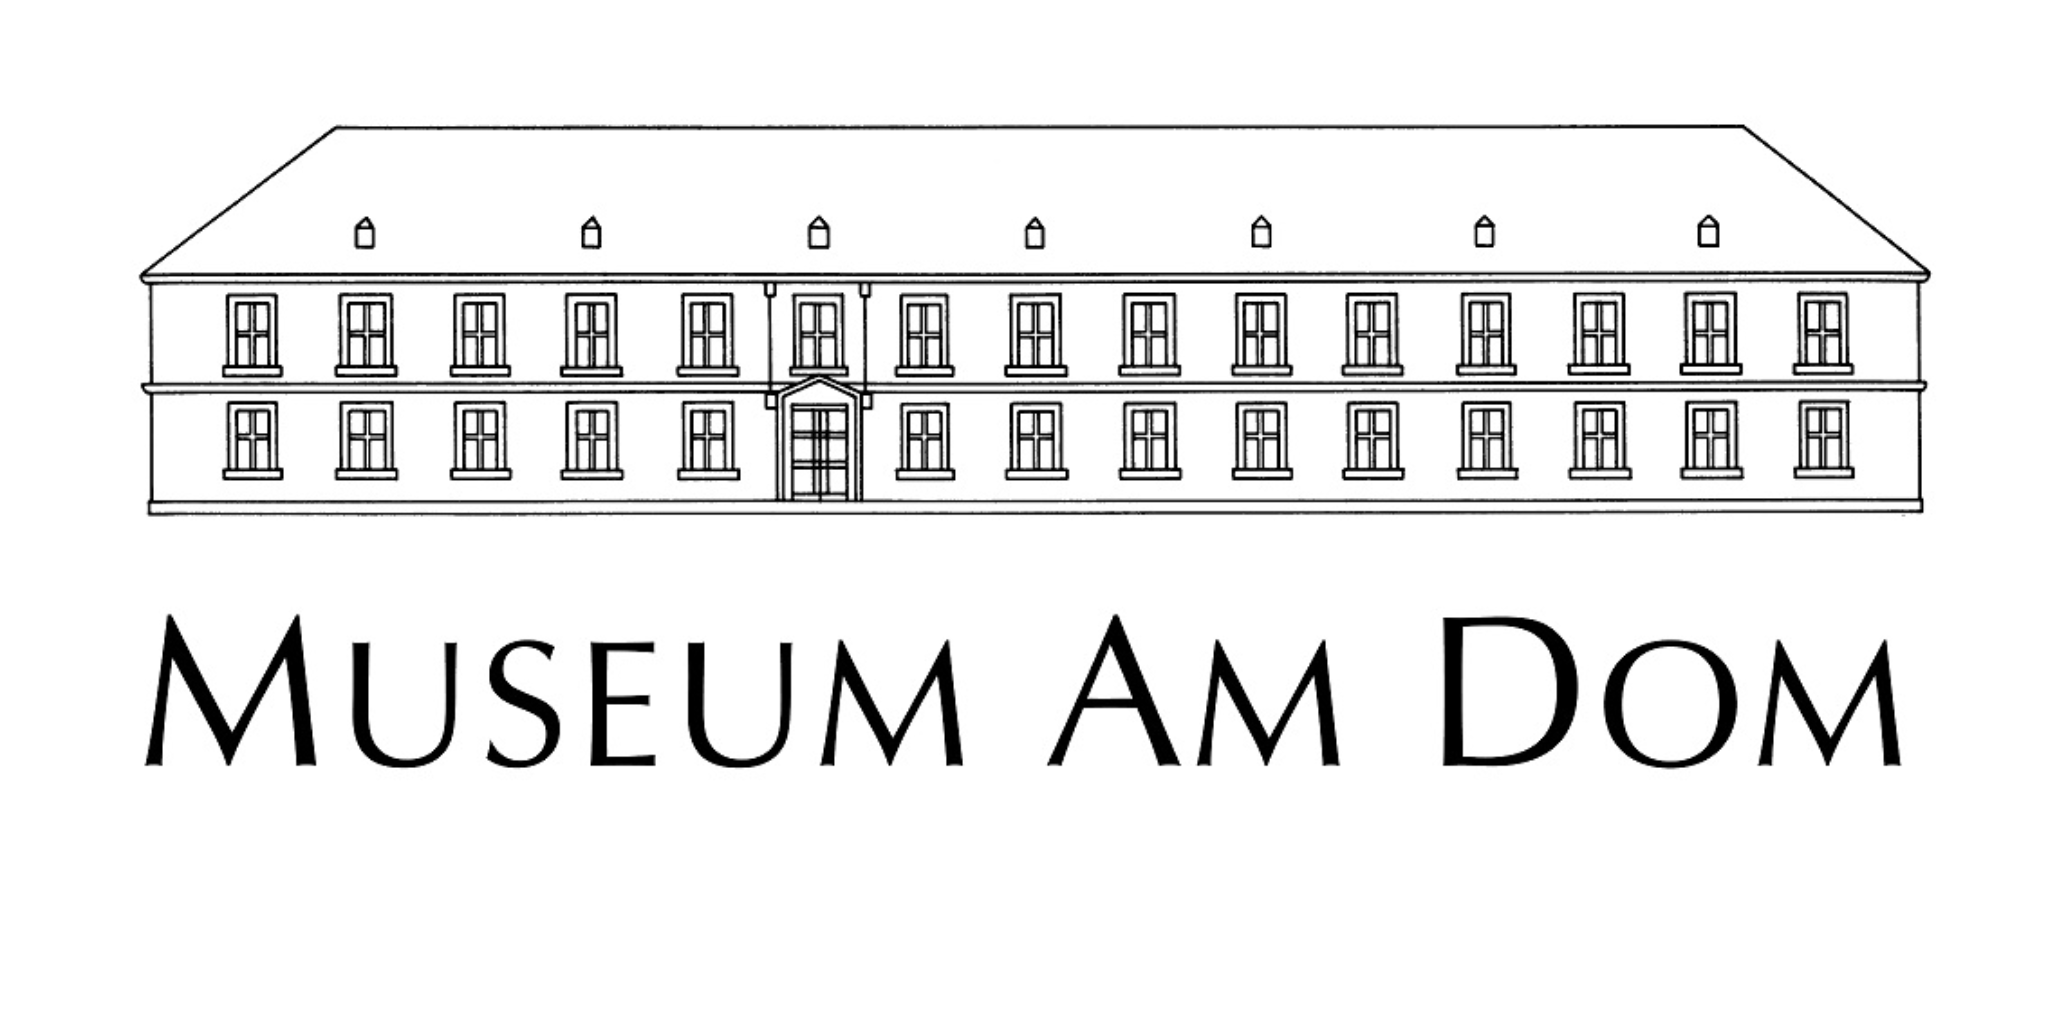 Man sieht das Museum am Dom als Zeichnung, darunter der Text Museum am Dom.